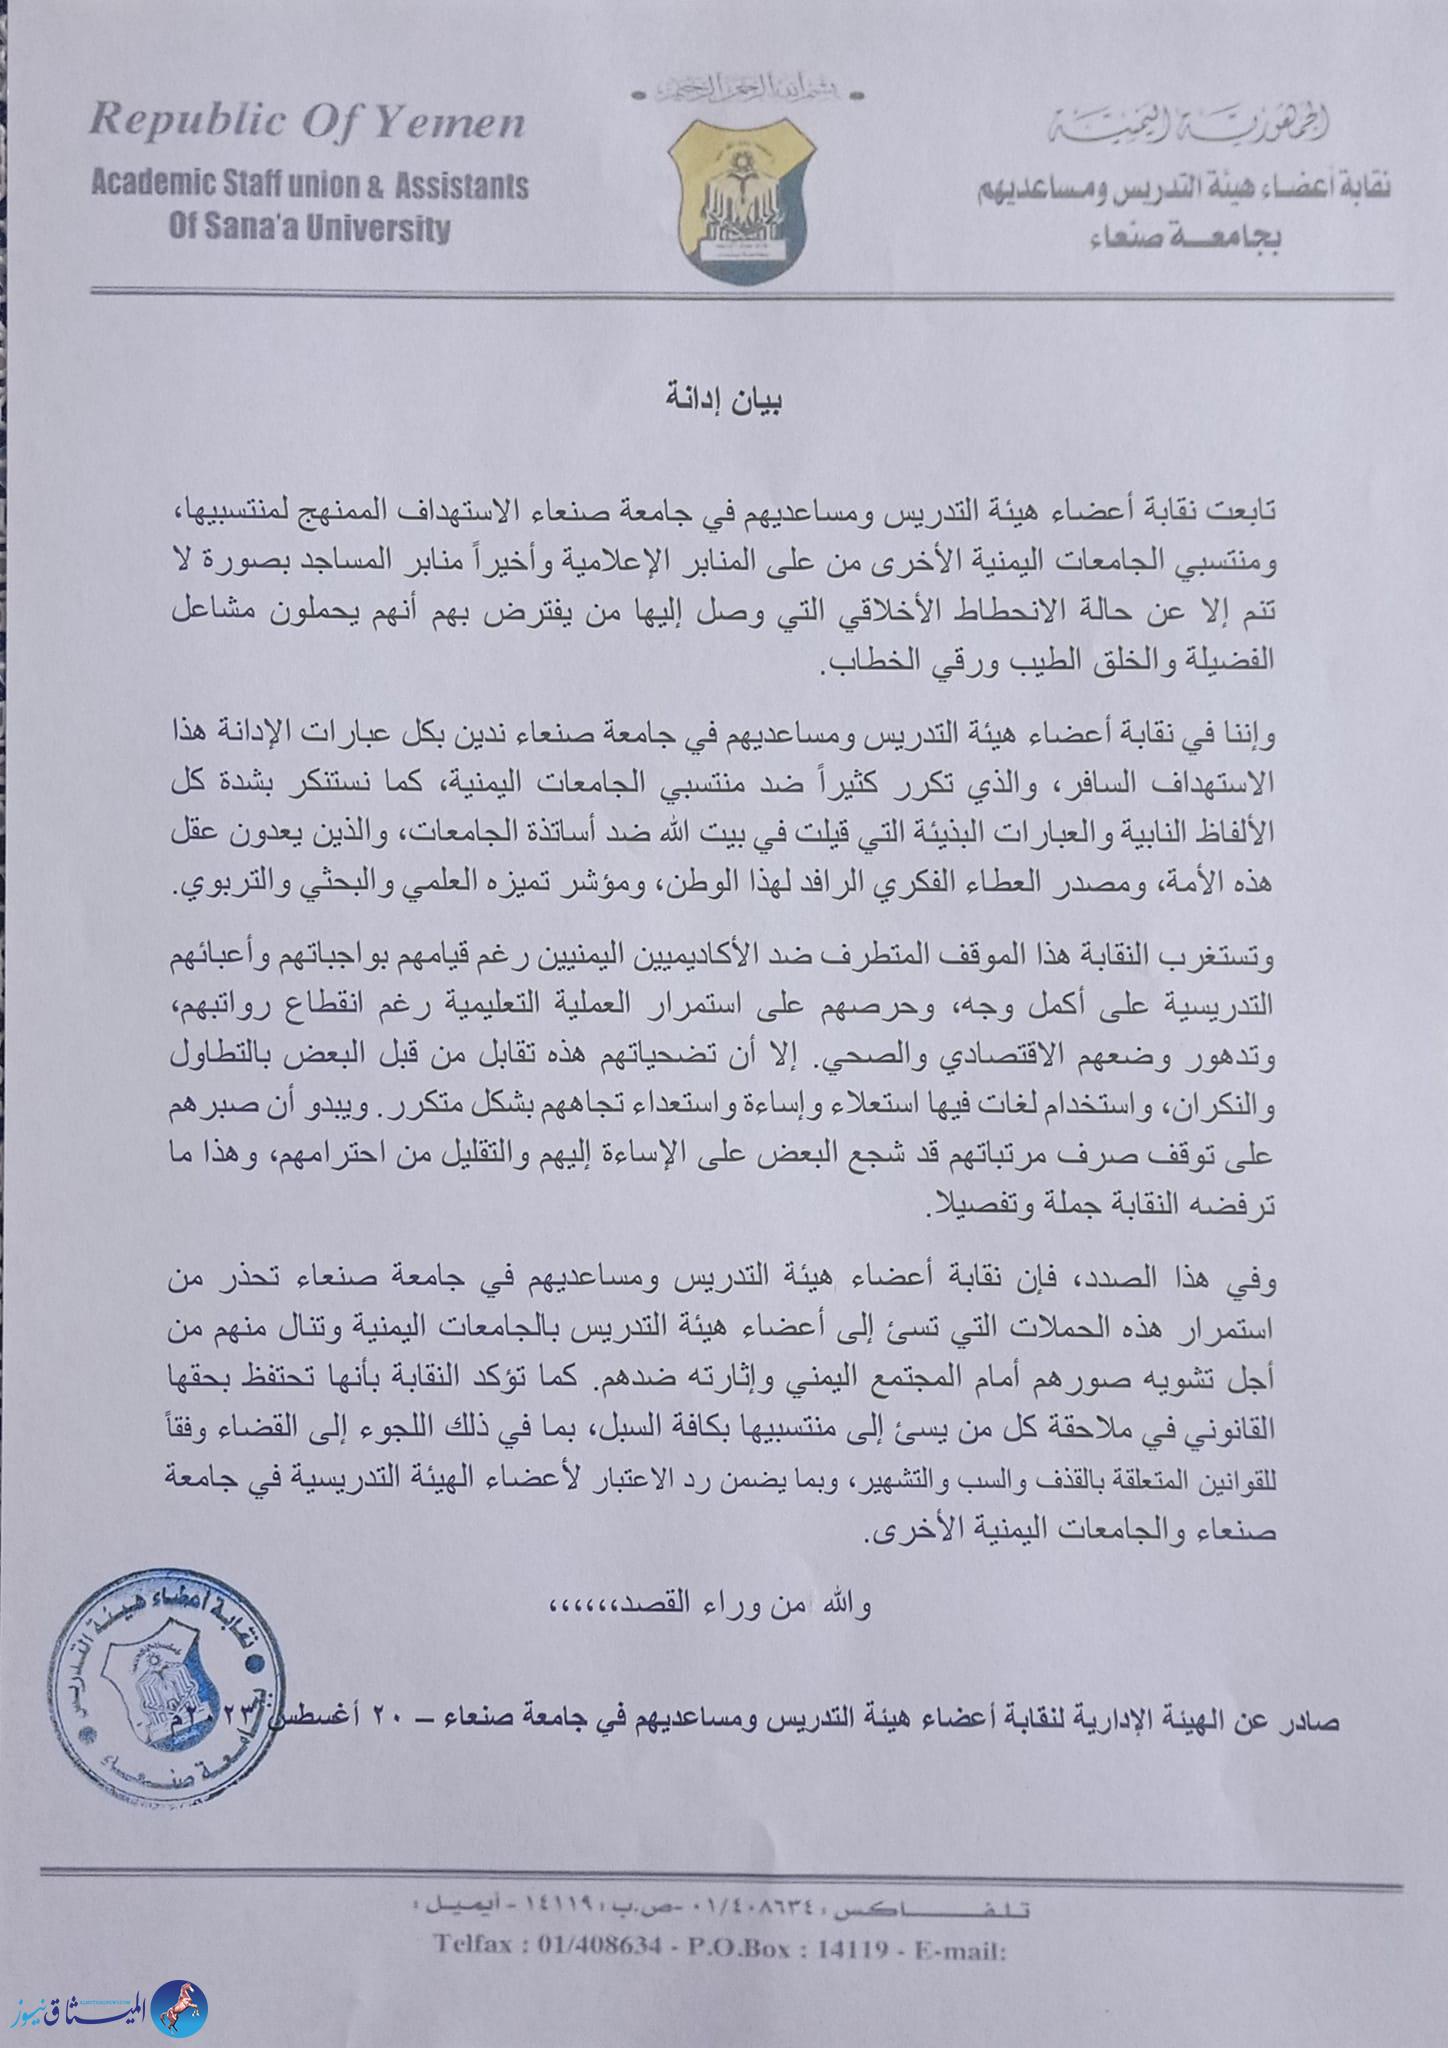 بيان نقابة أعضاء هيئة التدريس ومساعديهم في جامعة صنعاء